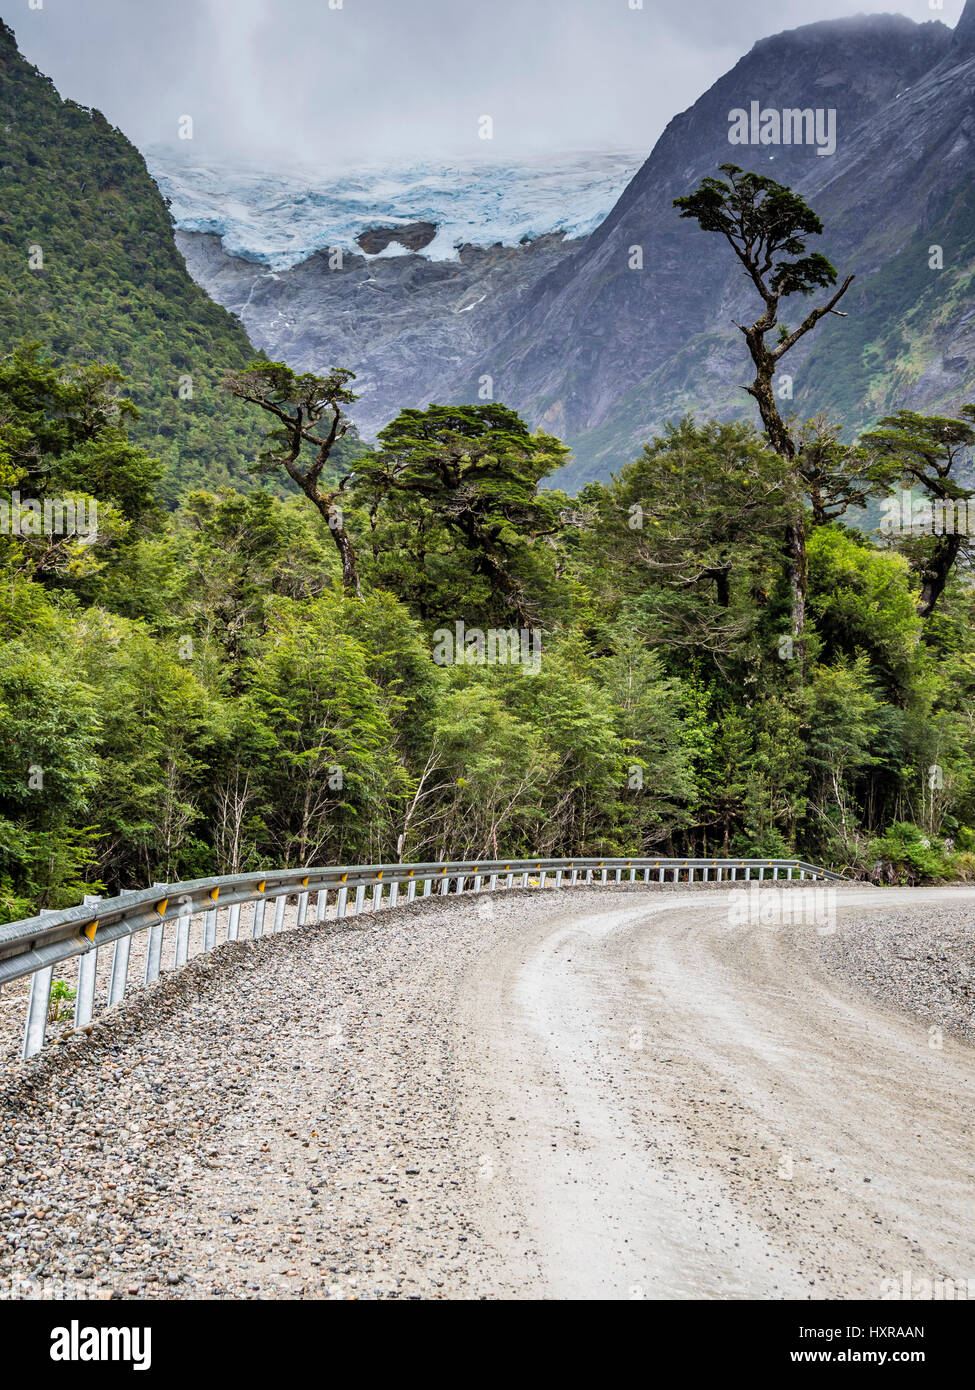 Route Carretera Austral au sud de Puyuhuapi, glacier au-dessus de forêt tropicale, Patagonie, Chili Banque D'Images